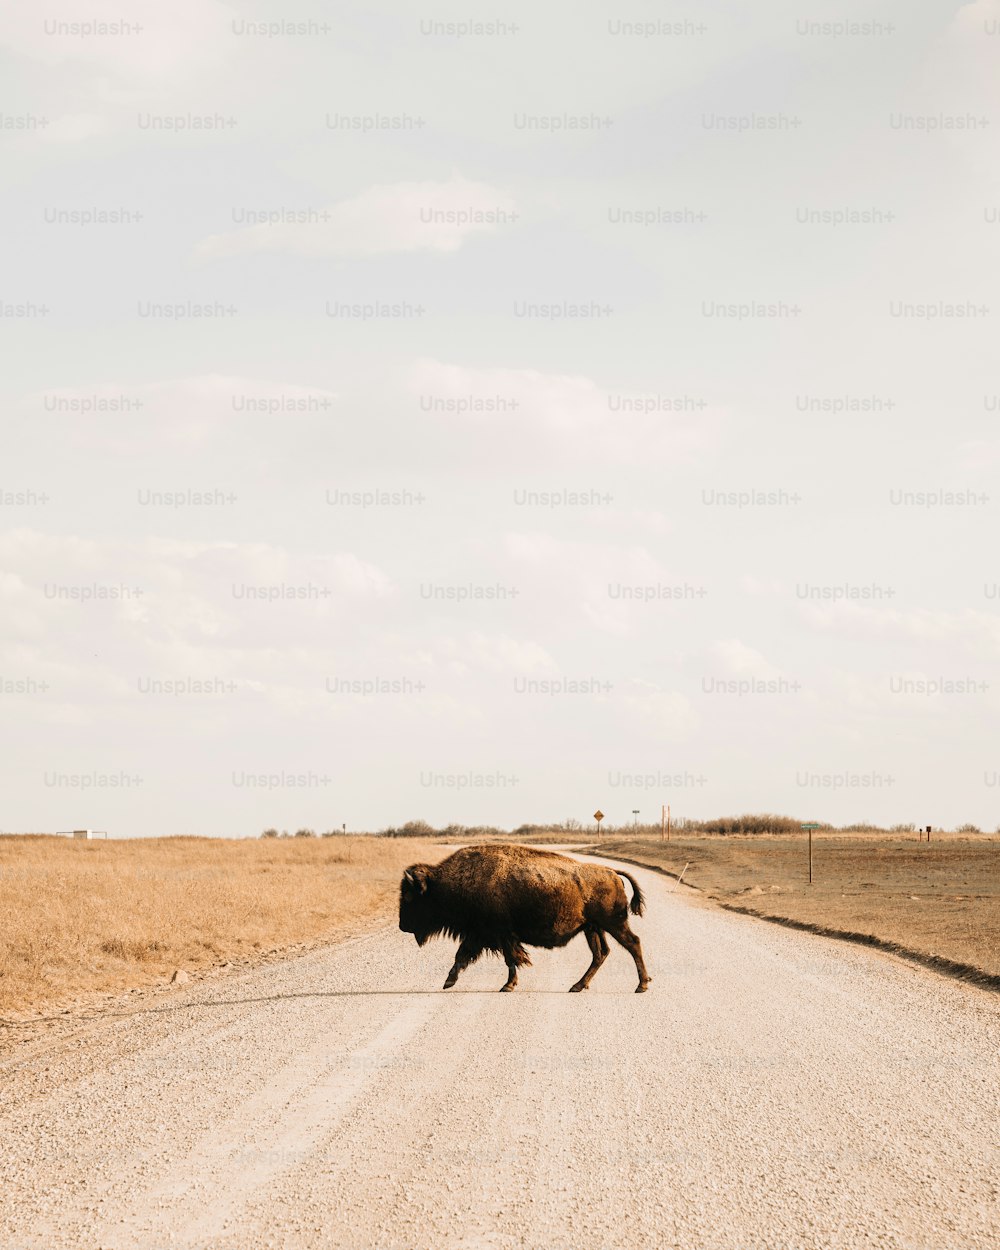 Un bisonte cruzando un camino de tierra en medio de la nada